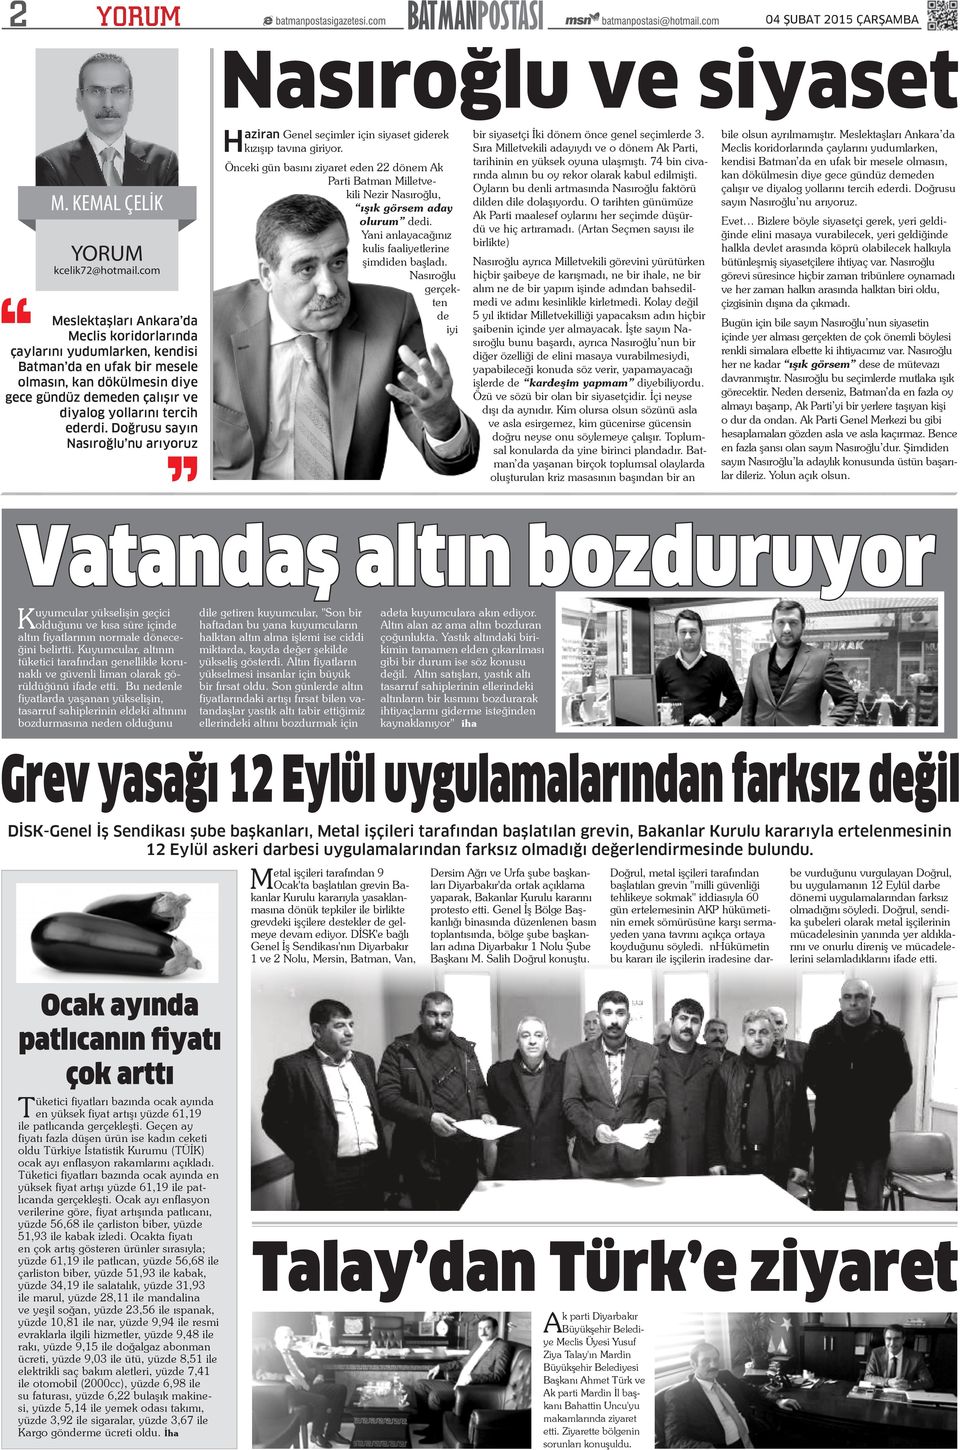 ederdi. Doğrusu sayın Nasıroğlu nu arıyoruz Nasıroğlu ve siyaset Haziran Genel seçimler için siyaset giderek kızışıp tavına giriyor.